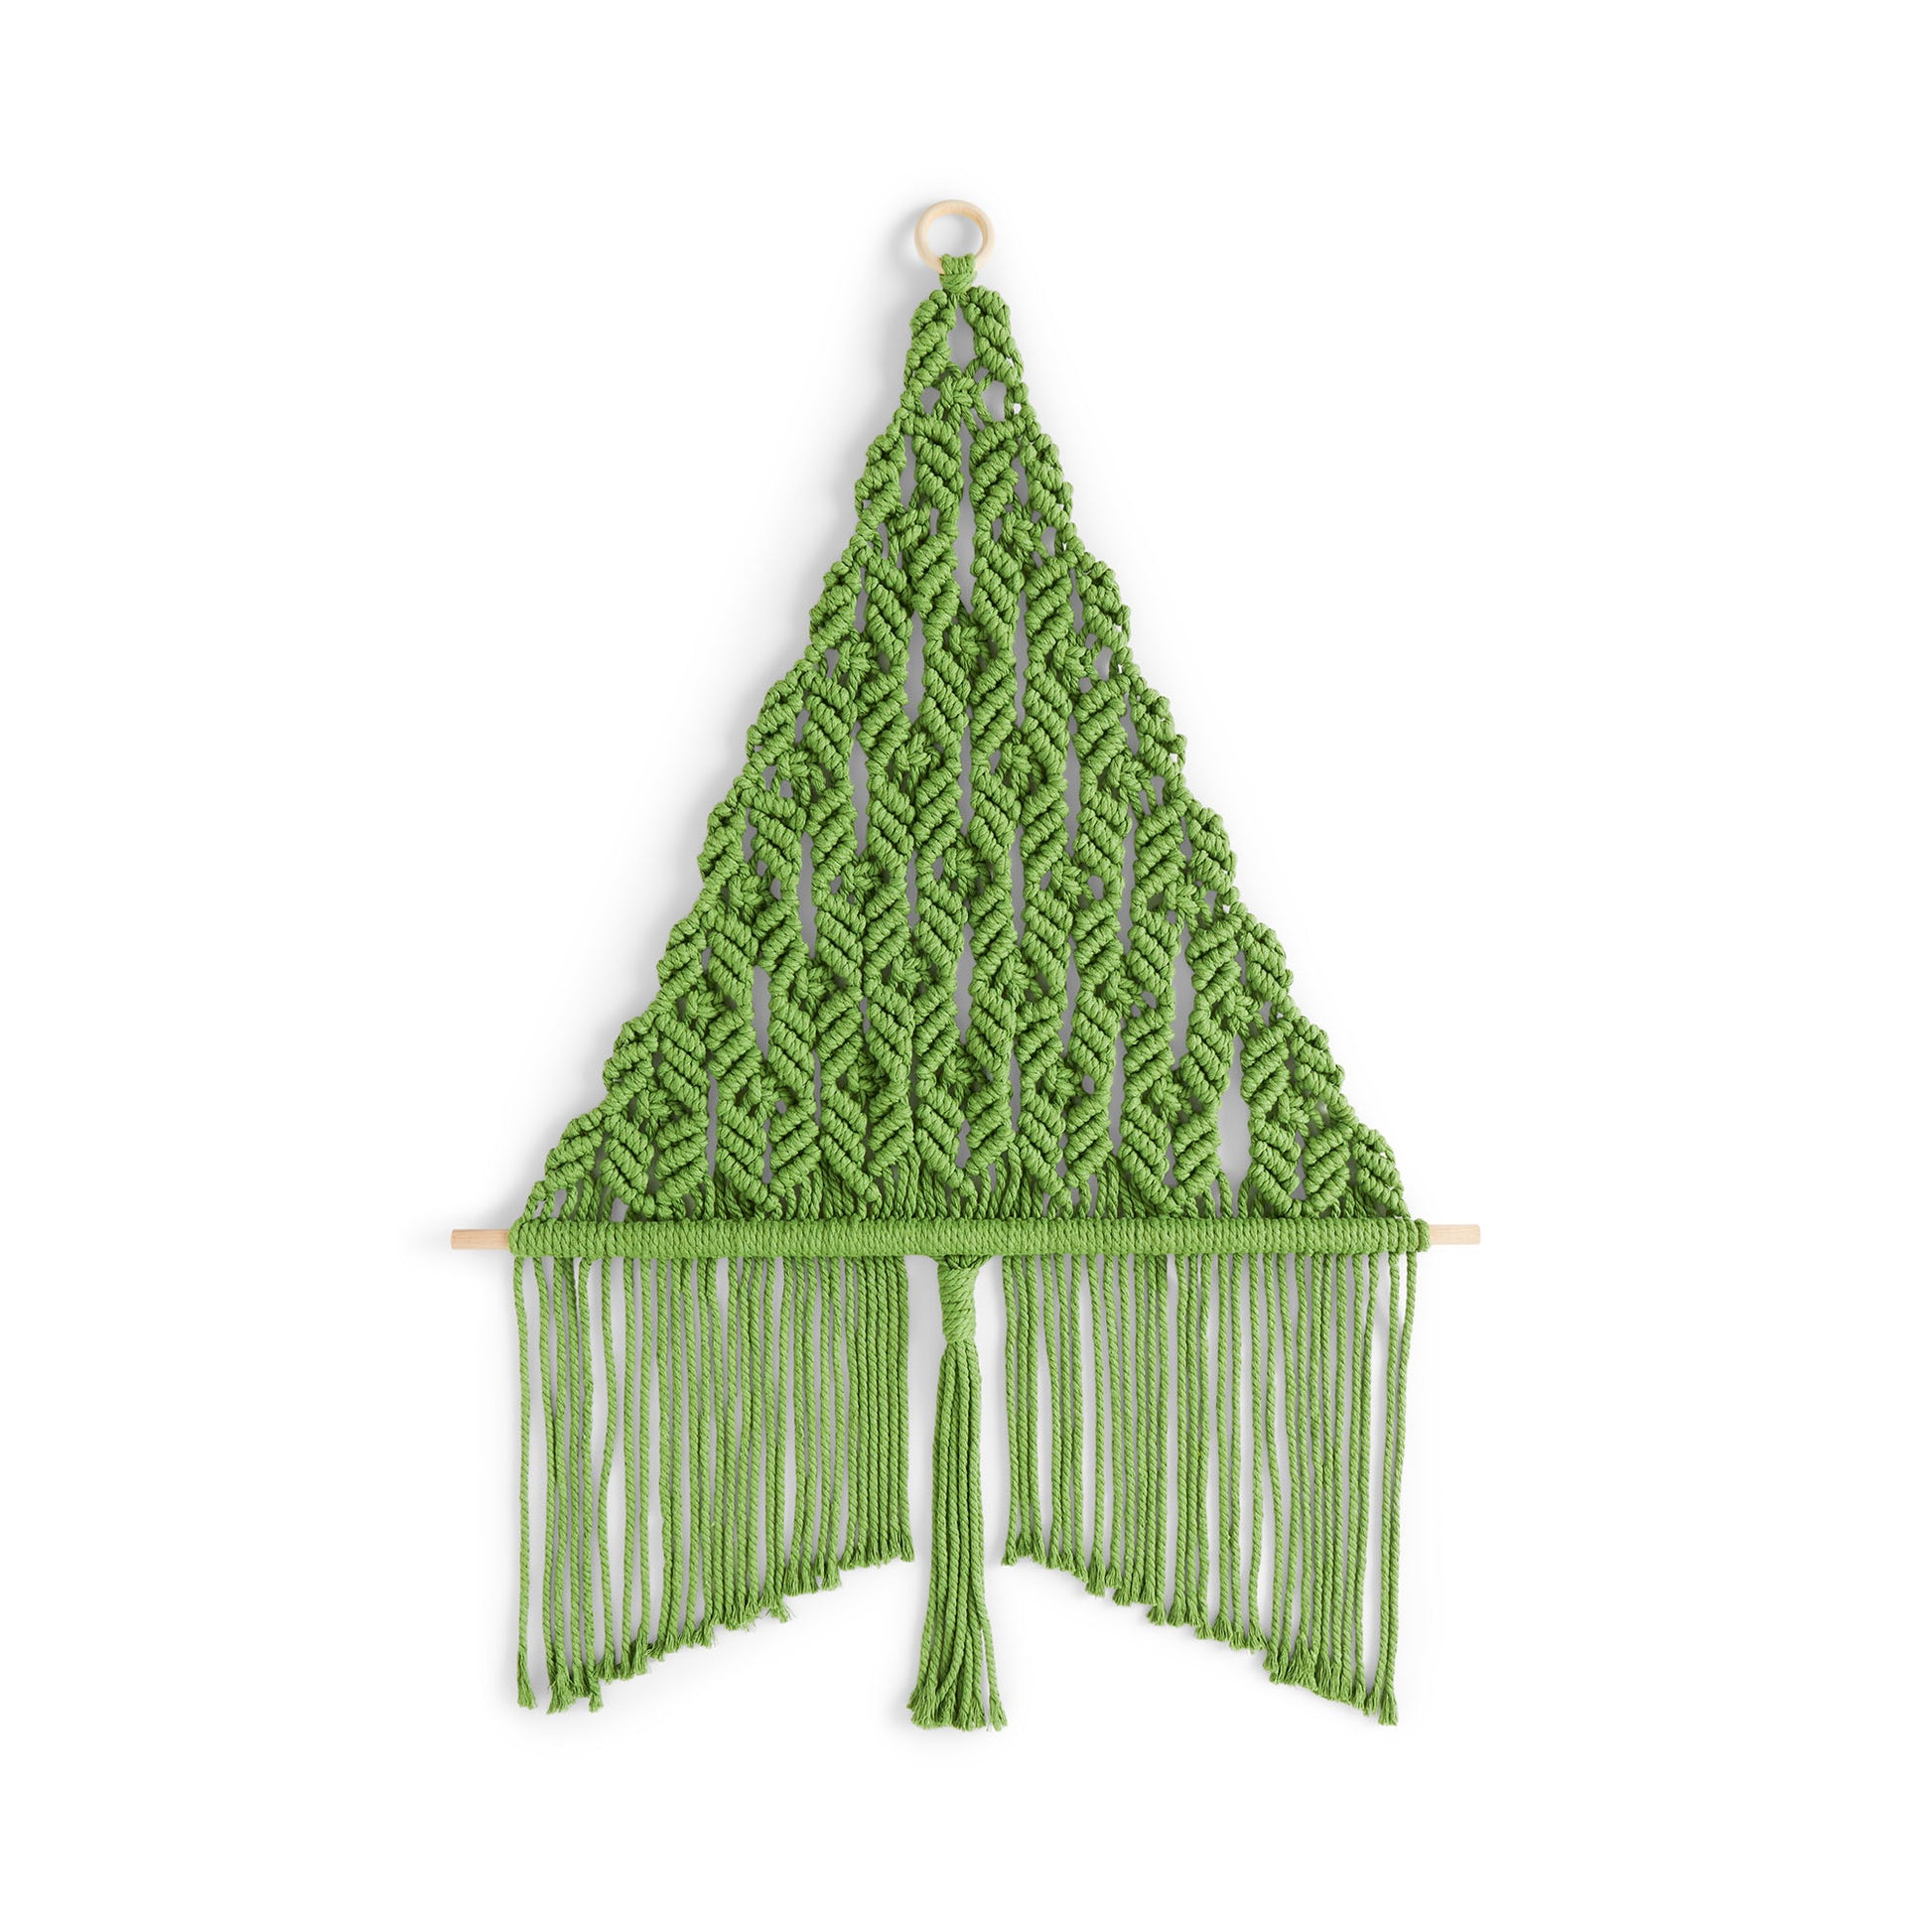 Free Bernat Macrame Holiday Tree Craft Pattern